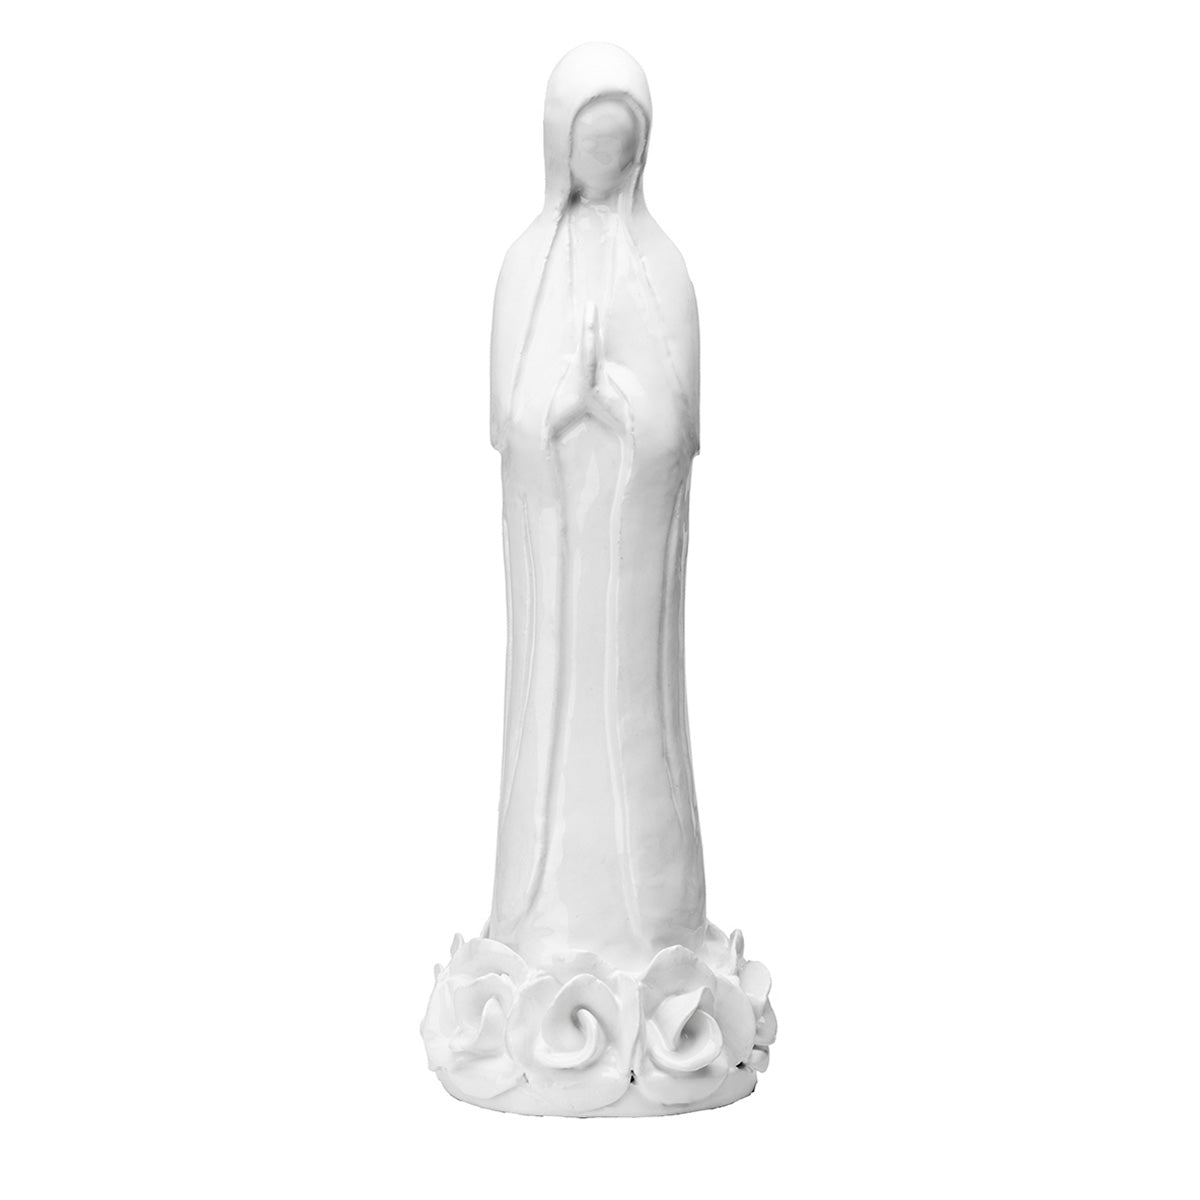 Figura Virgen María en cerámica